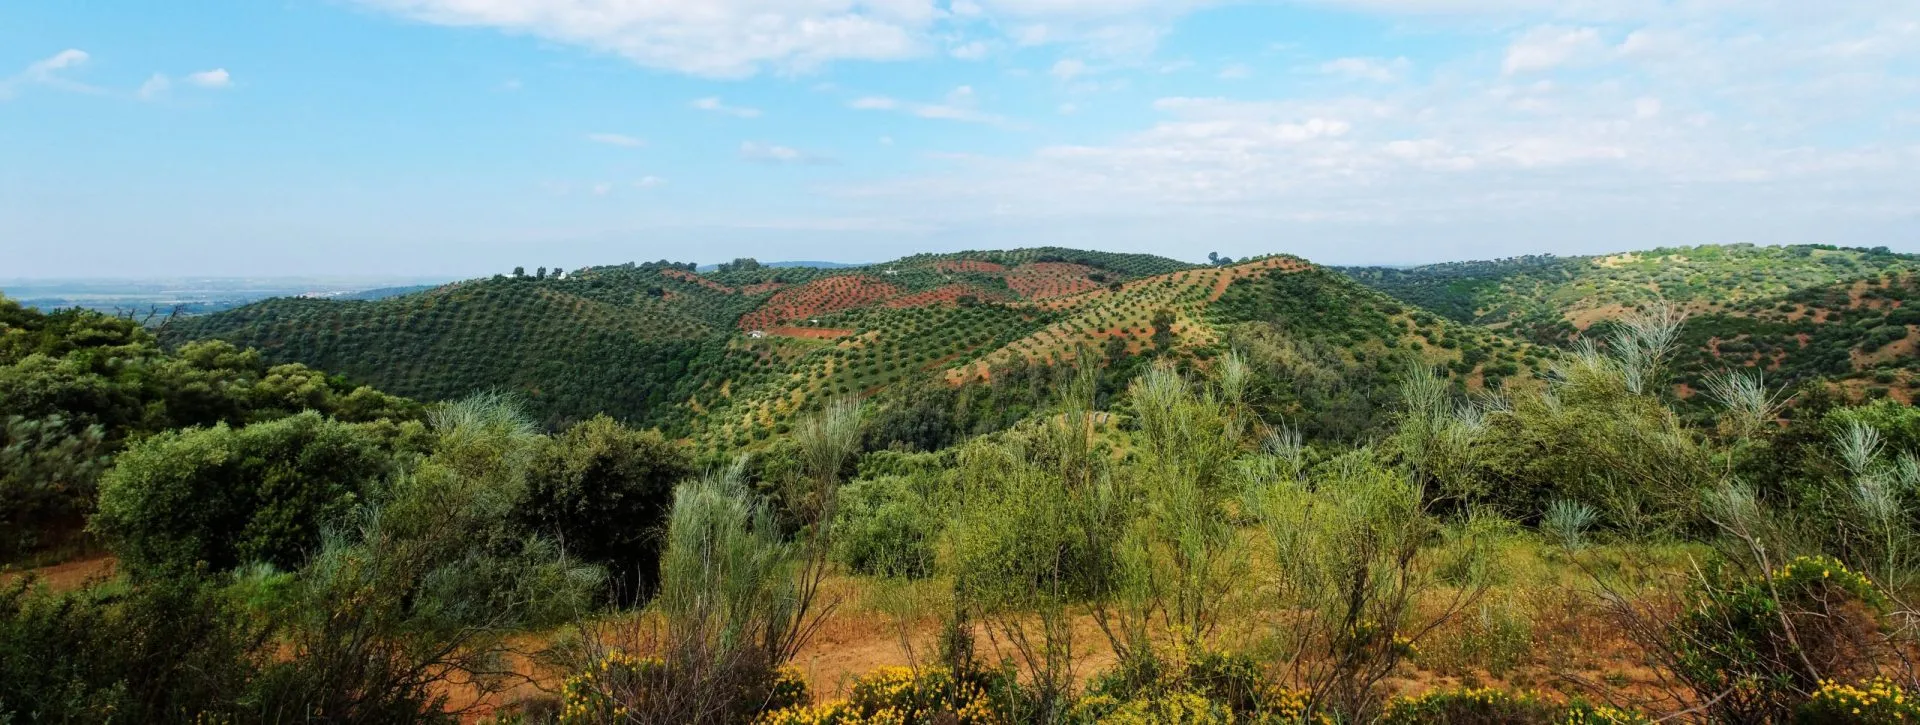 Pittoreskt medelhavslandskap med kullar täckta av olivträd nära La Brena reservoar i Spanien